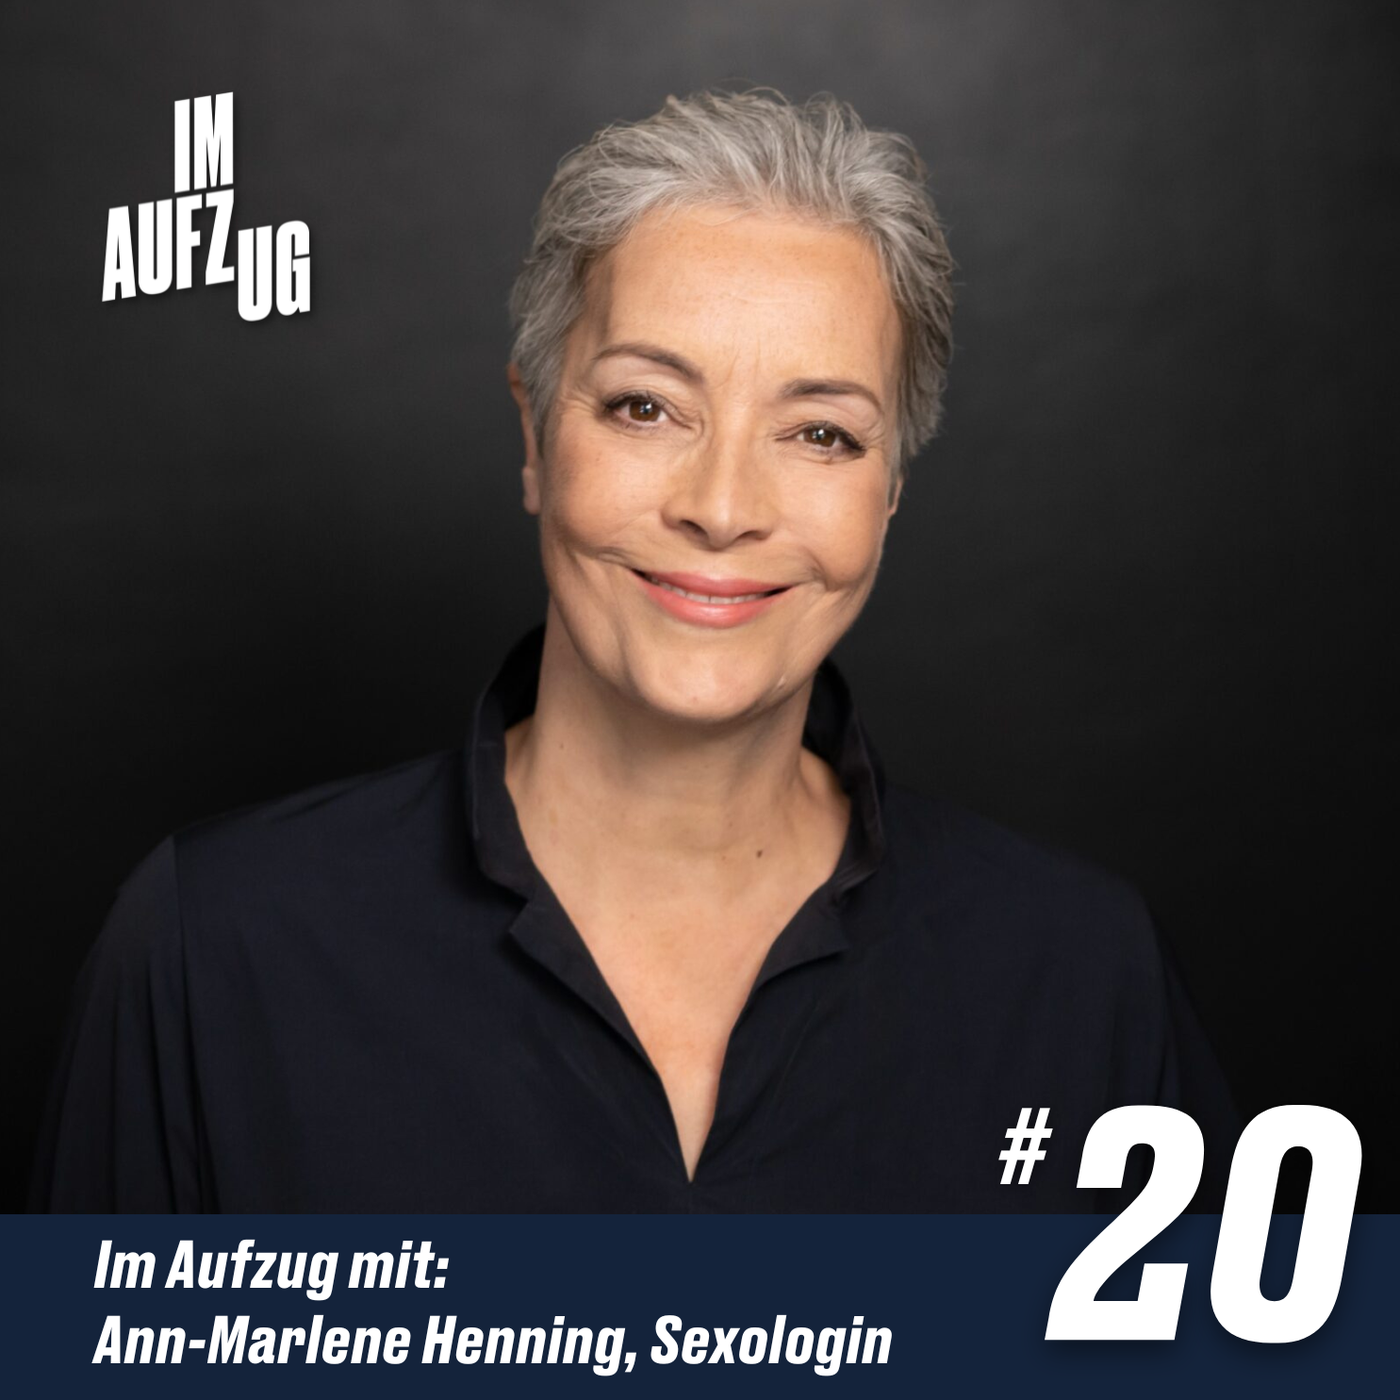 Im Aufzug mit Ann-Marlene Henning, Sexologin